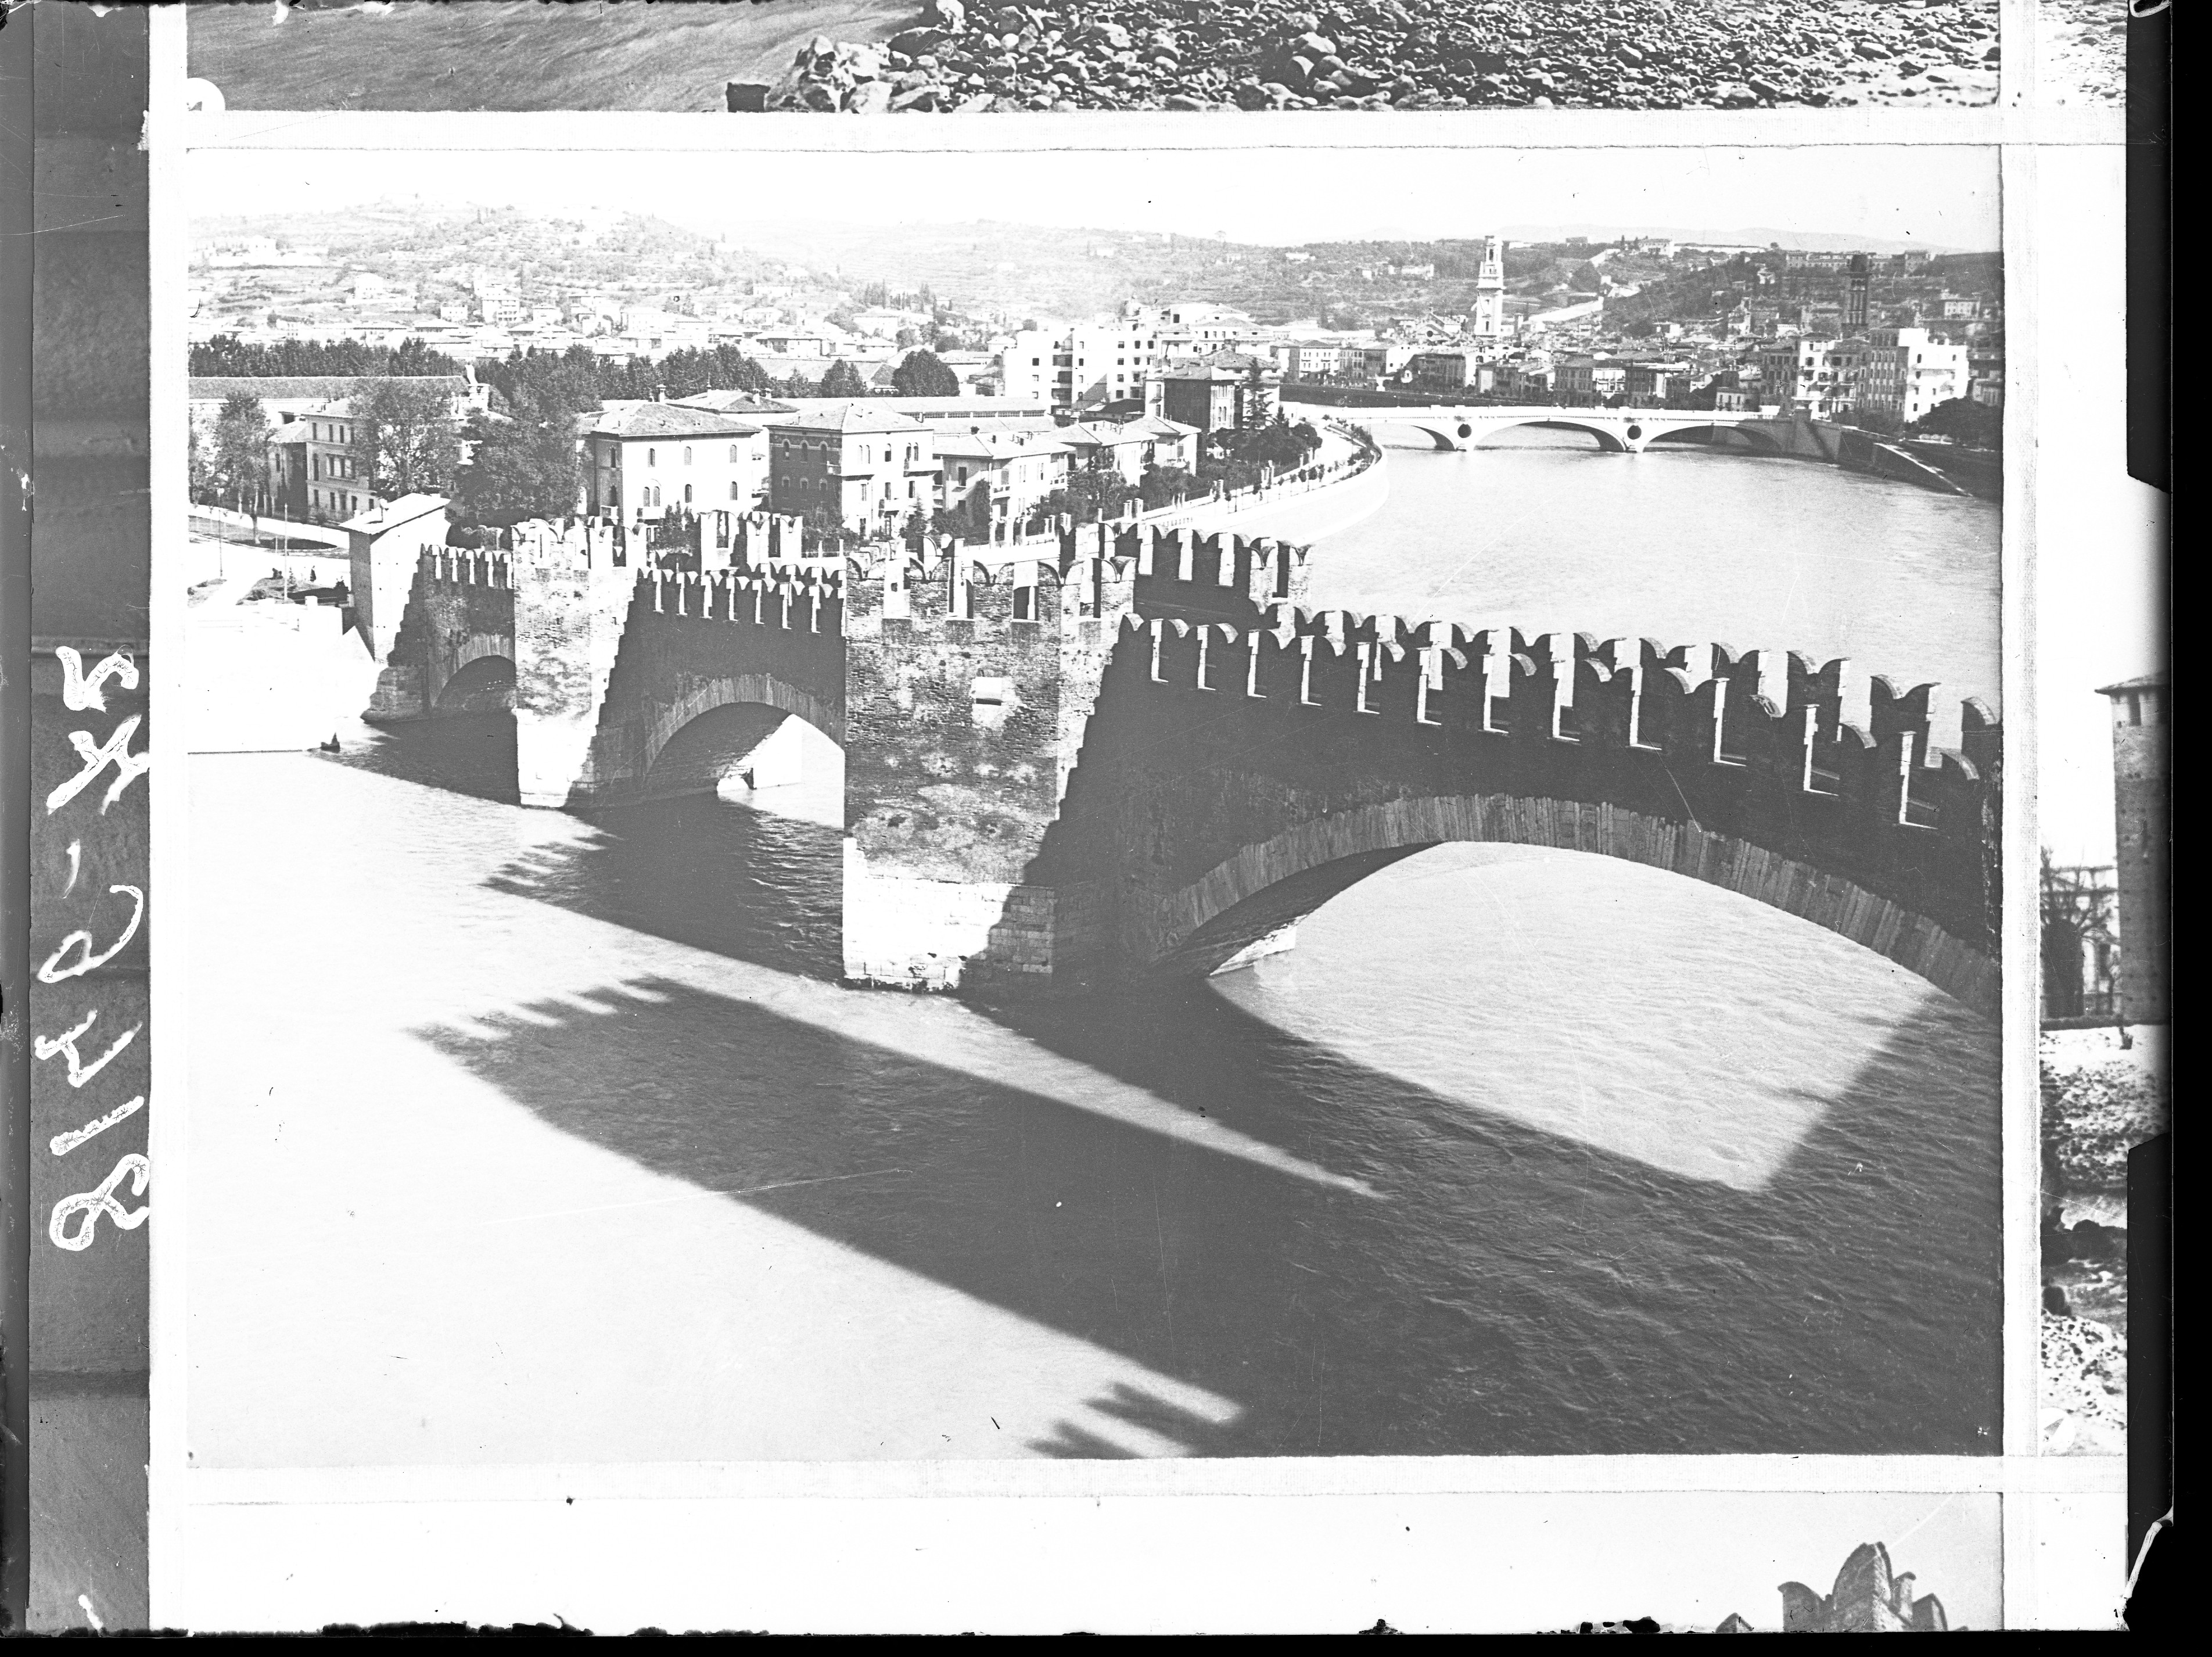 ponti - ponte di Castelvecchio <Verona> (negativo) di Soprintendenza ai monumenti prov. VR MN CR (attribuito) (metà XX)